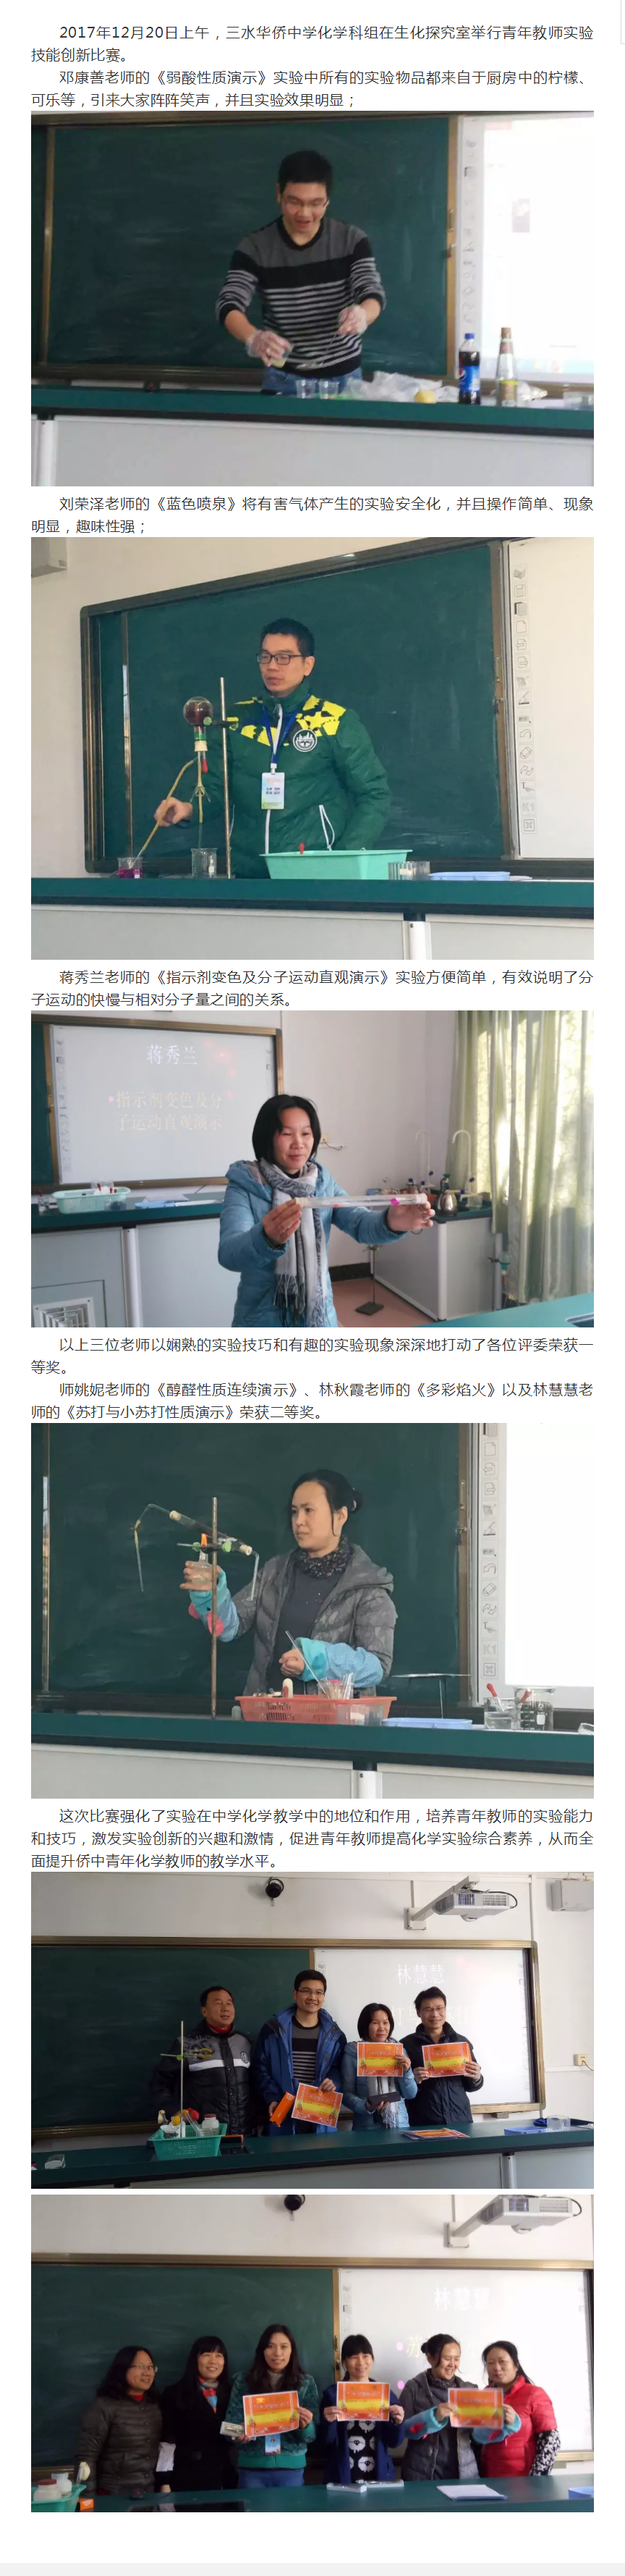 三水华侨中学举行青年教师实验技能创新比赛